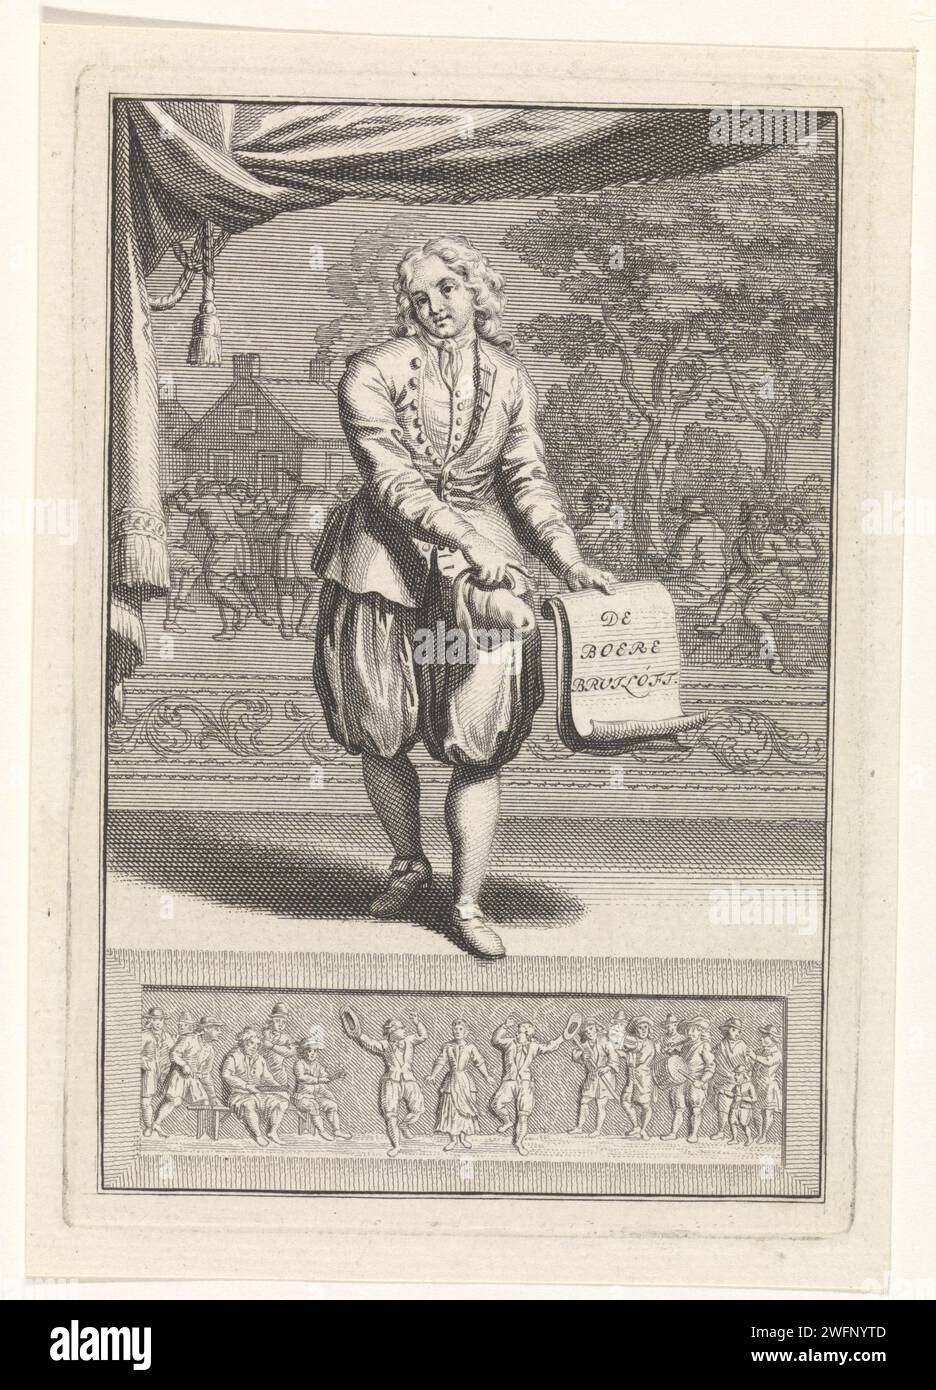 Eine Figur auf der Bühne präsentiert den Titel des Stücks, Bernard Picart (möglich), 1683 - 1733 Druck auf der Bühne ist eine Figur, die auf ein Blatt Papier verweist, auf dem der Titel des Stücks auf Niederländisch: 'De Boere Wedding'. Ein Bauerntanz im Hintergrund. Papier zum Ätzen/Gravieren der Bühne und ihrer Ausrüstung. Tanzen. Landwirte Stockfoto